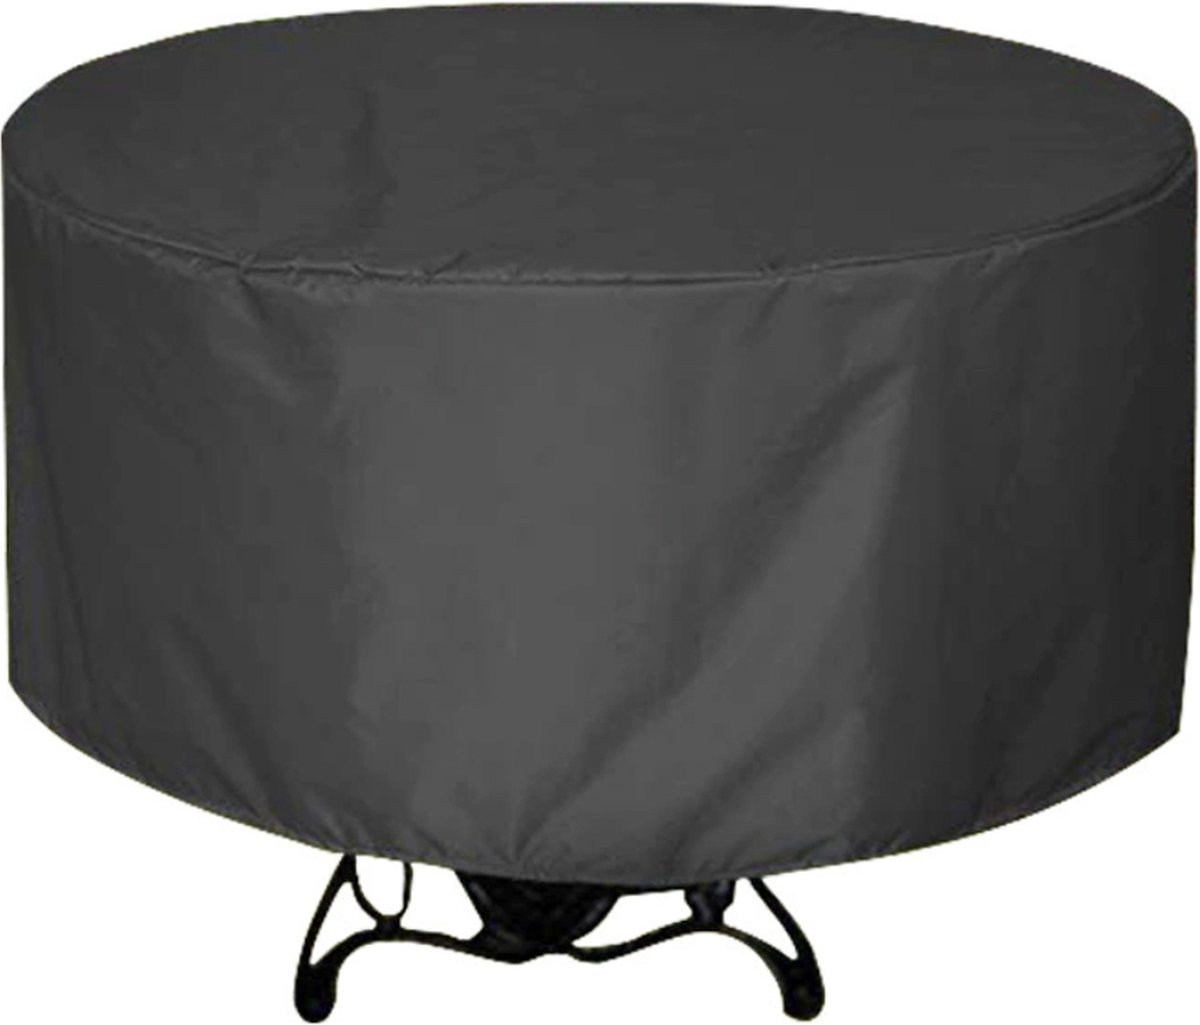 Hoppa! tuinmeubelhoes - tuinmeubelcover - buitenhoes - rond - zwart, 148*60 cm - hoes voor patio meubels, buitentafels - koffietafels en stoelen. 420D UV-bestendig, zilver gecoate Oxford-stof